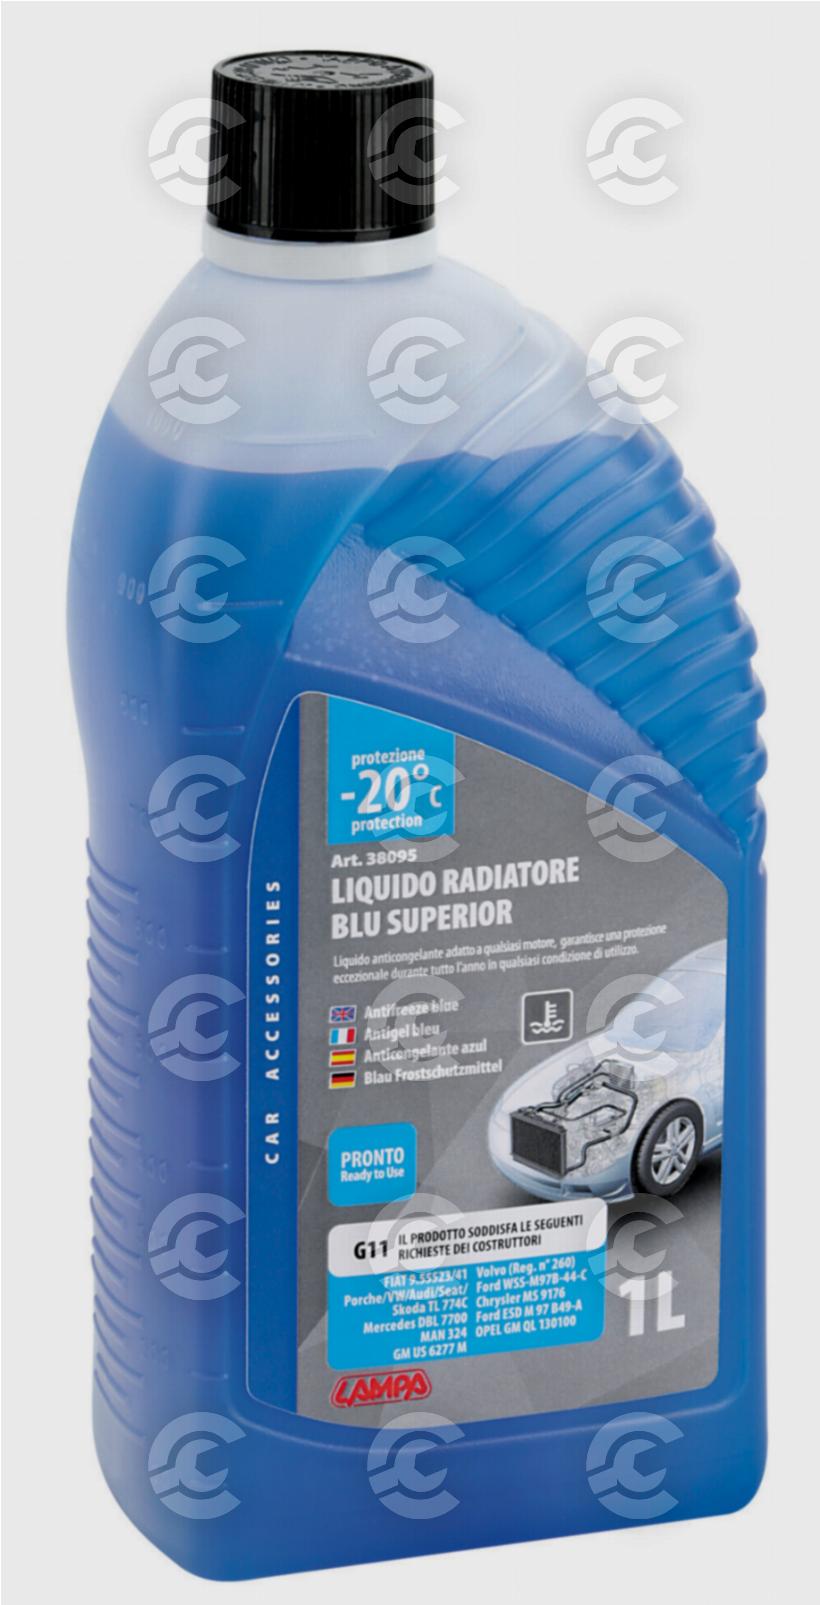 Superior-Blu G11, liquido antigelo radiatore (-20°C) - 1 L